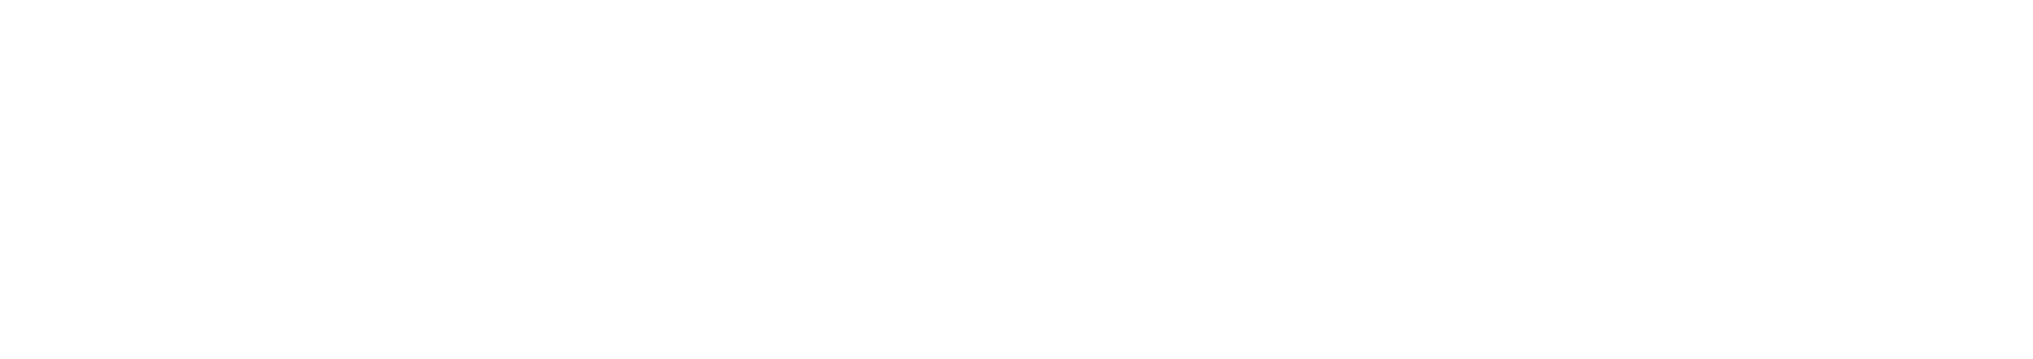 Venice 2089